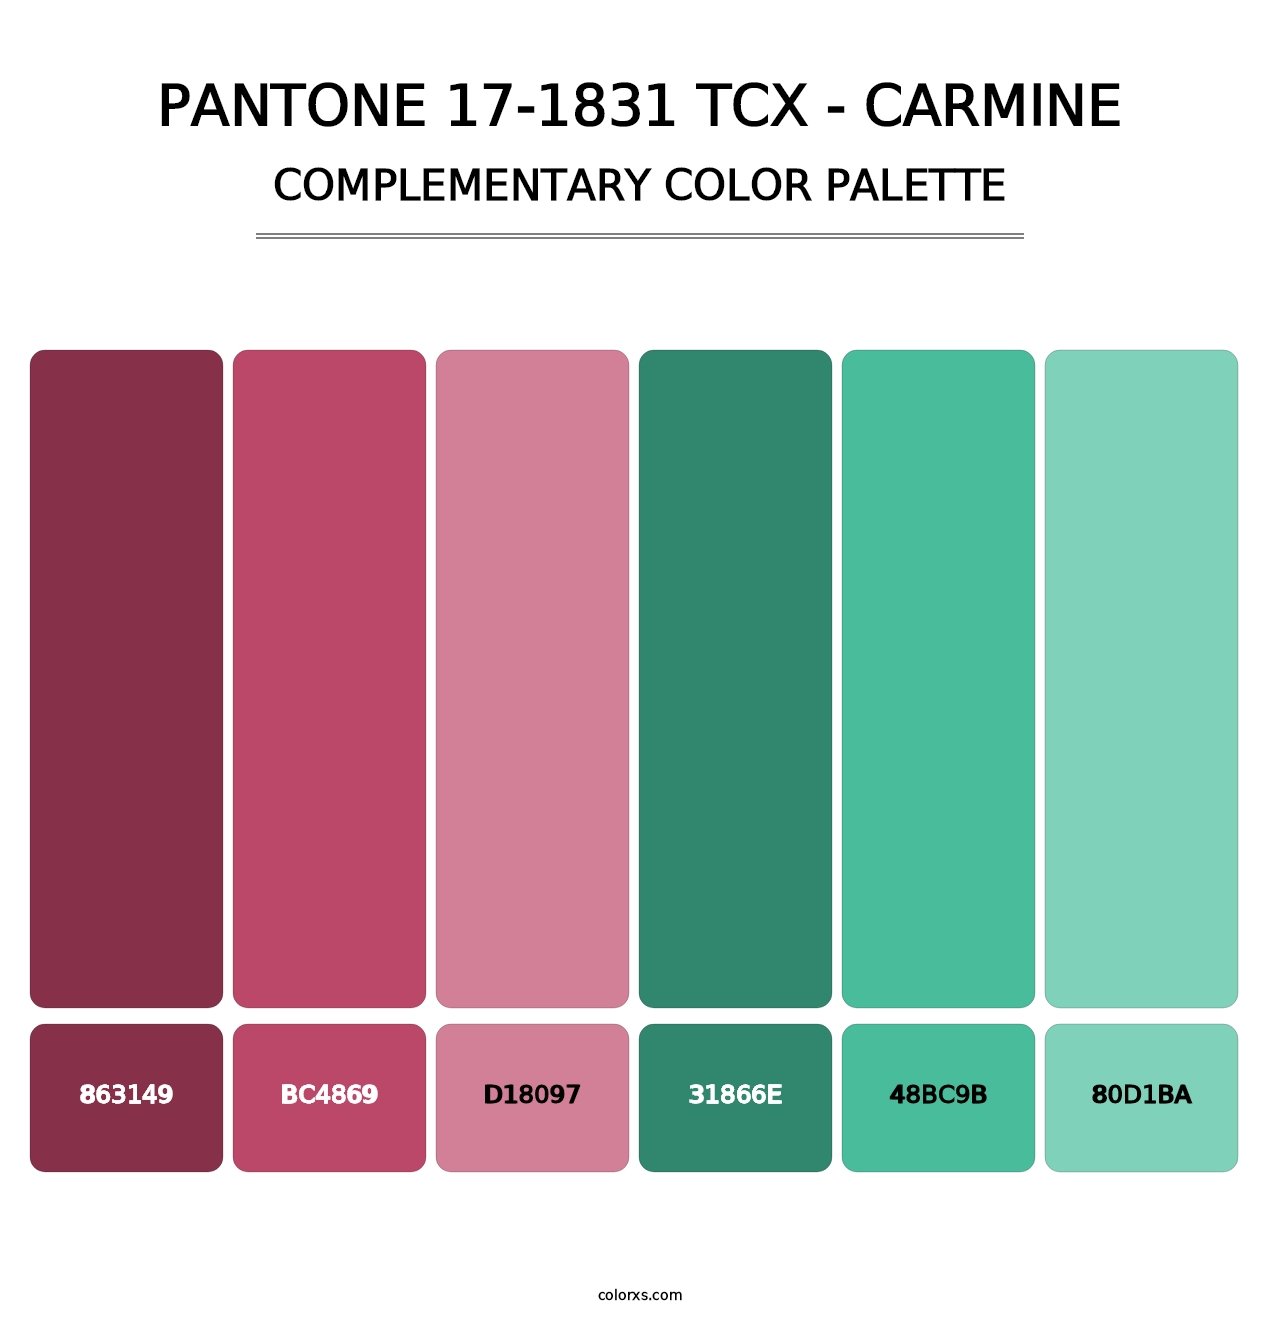 PANTONE 17-1831 TCX - Carmine - Complementary Color Palette